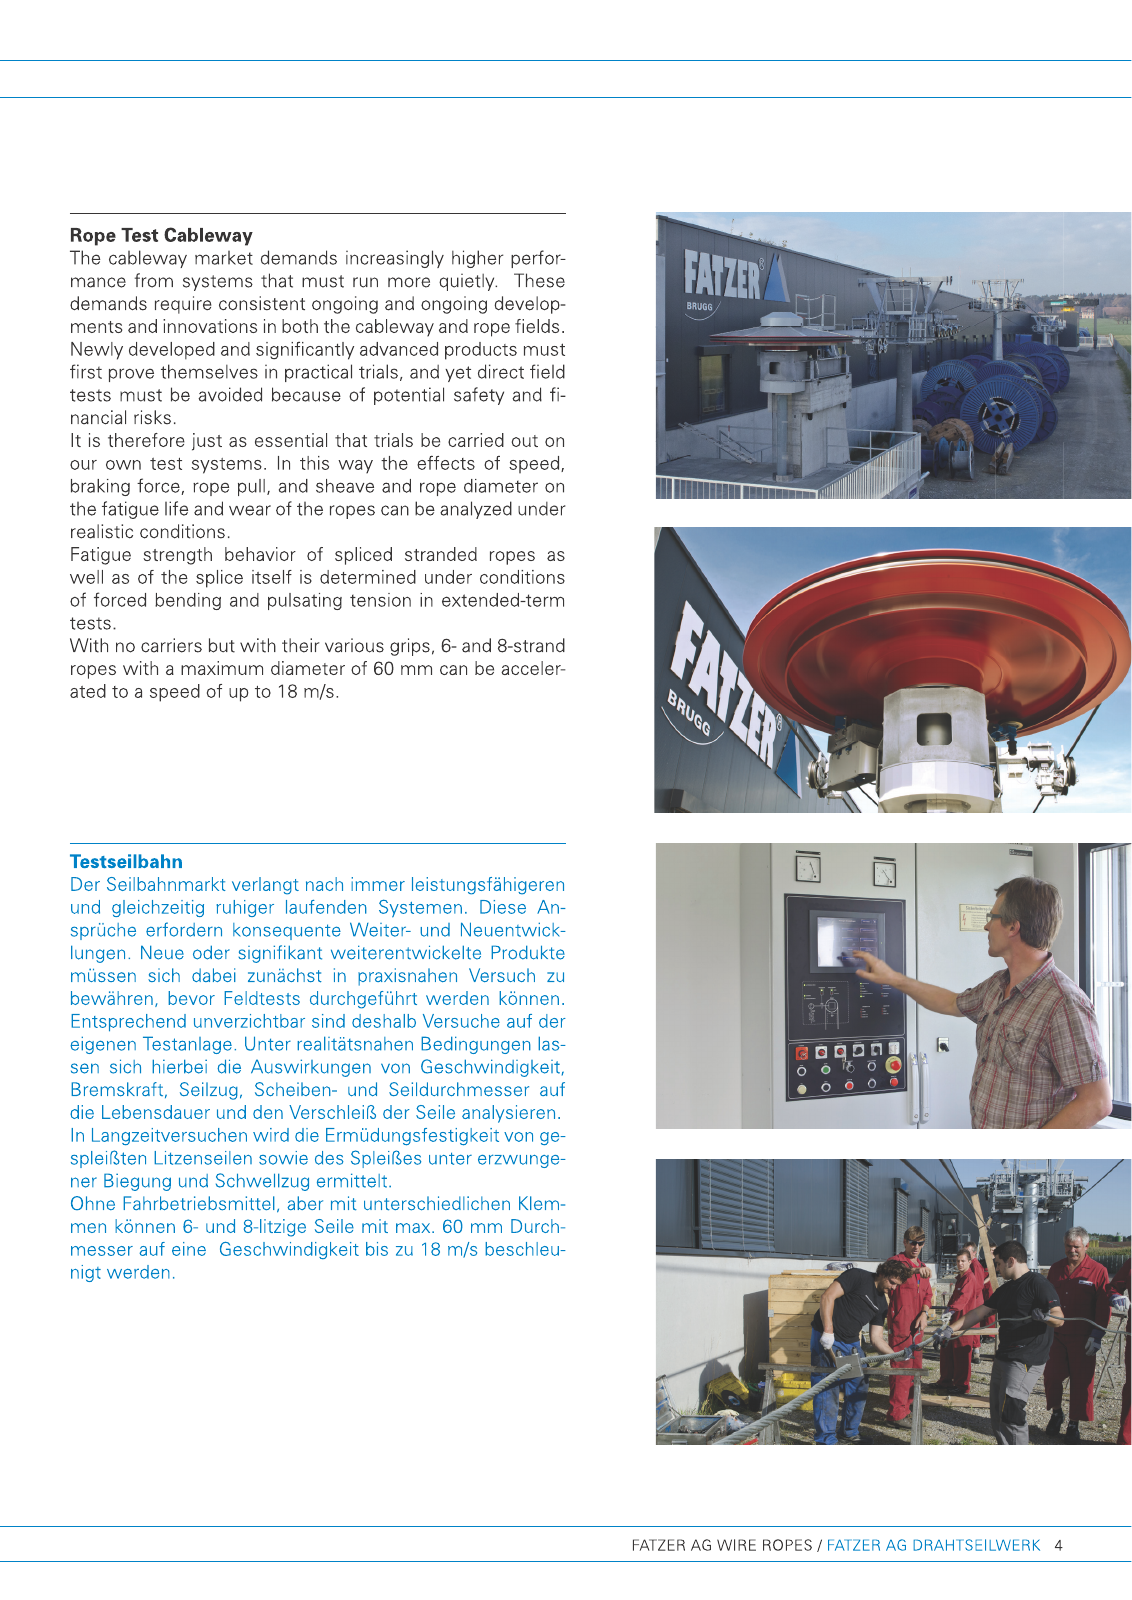 Vorschau FATZER Company Brochure 2015 Seite 5